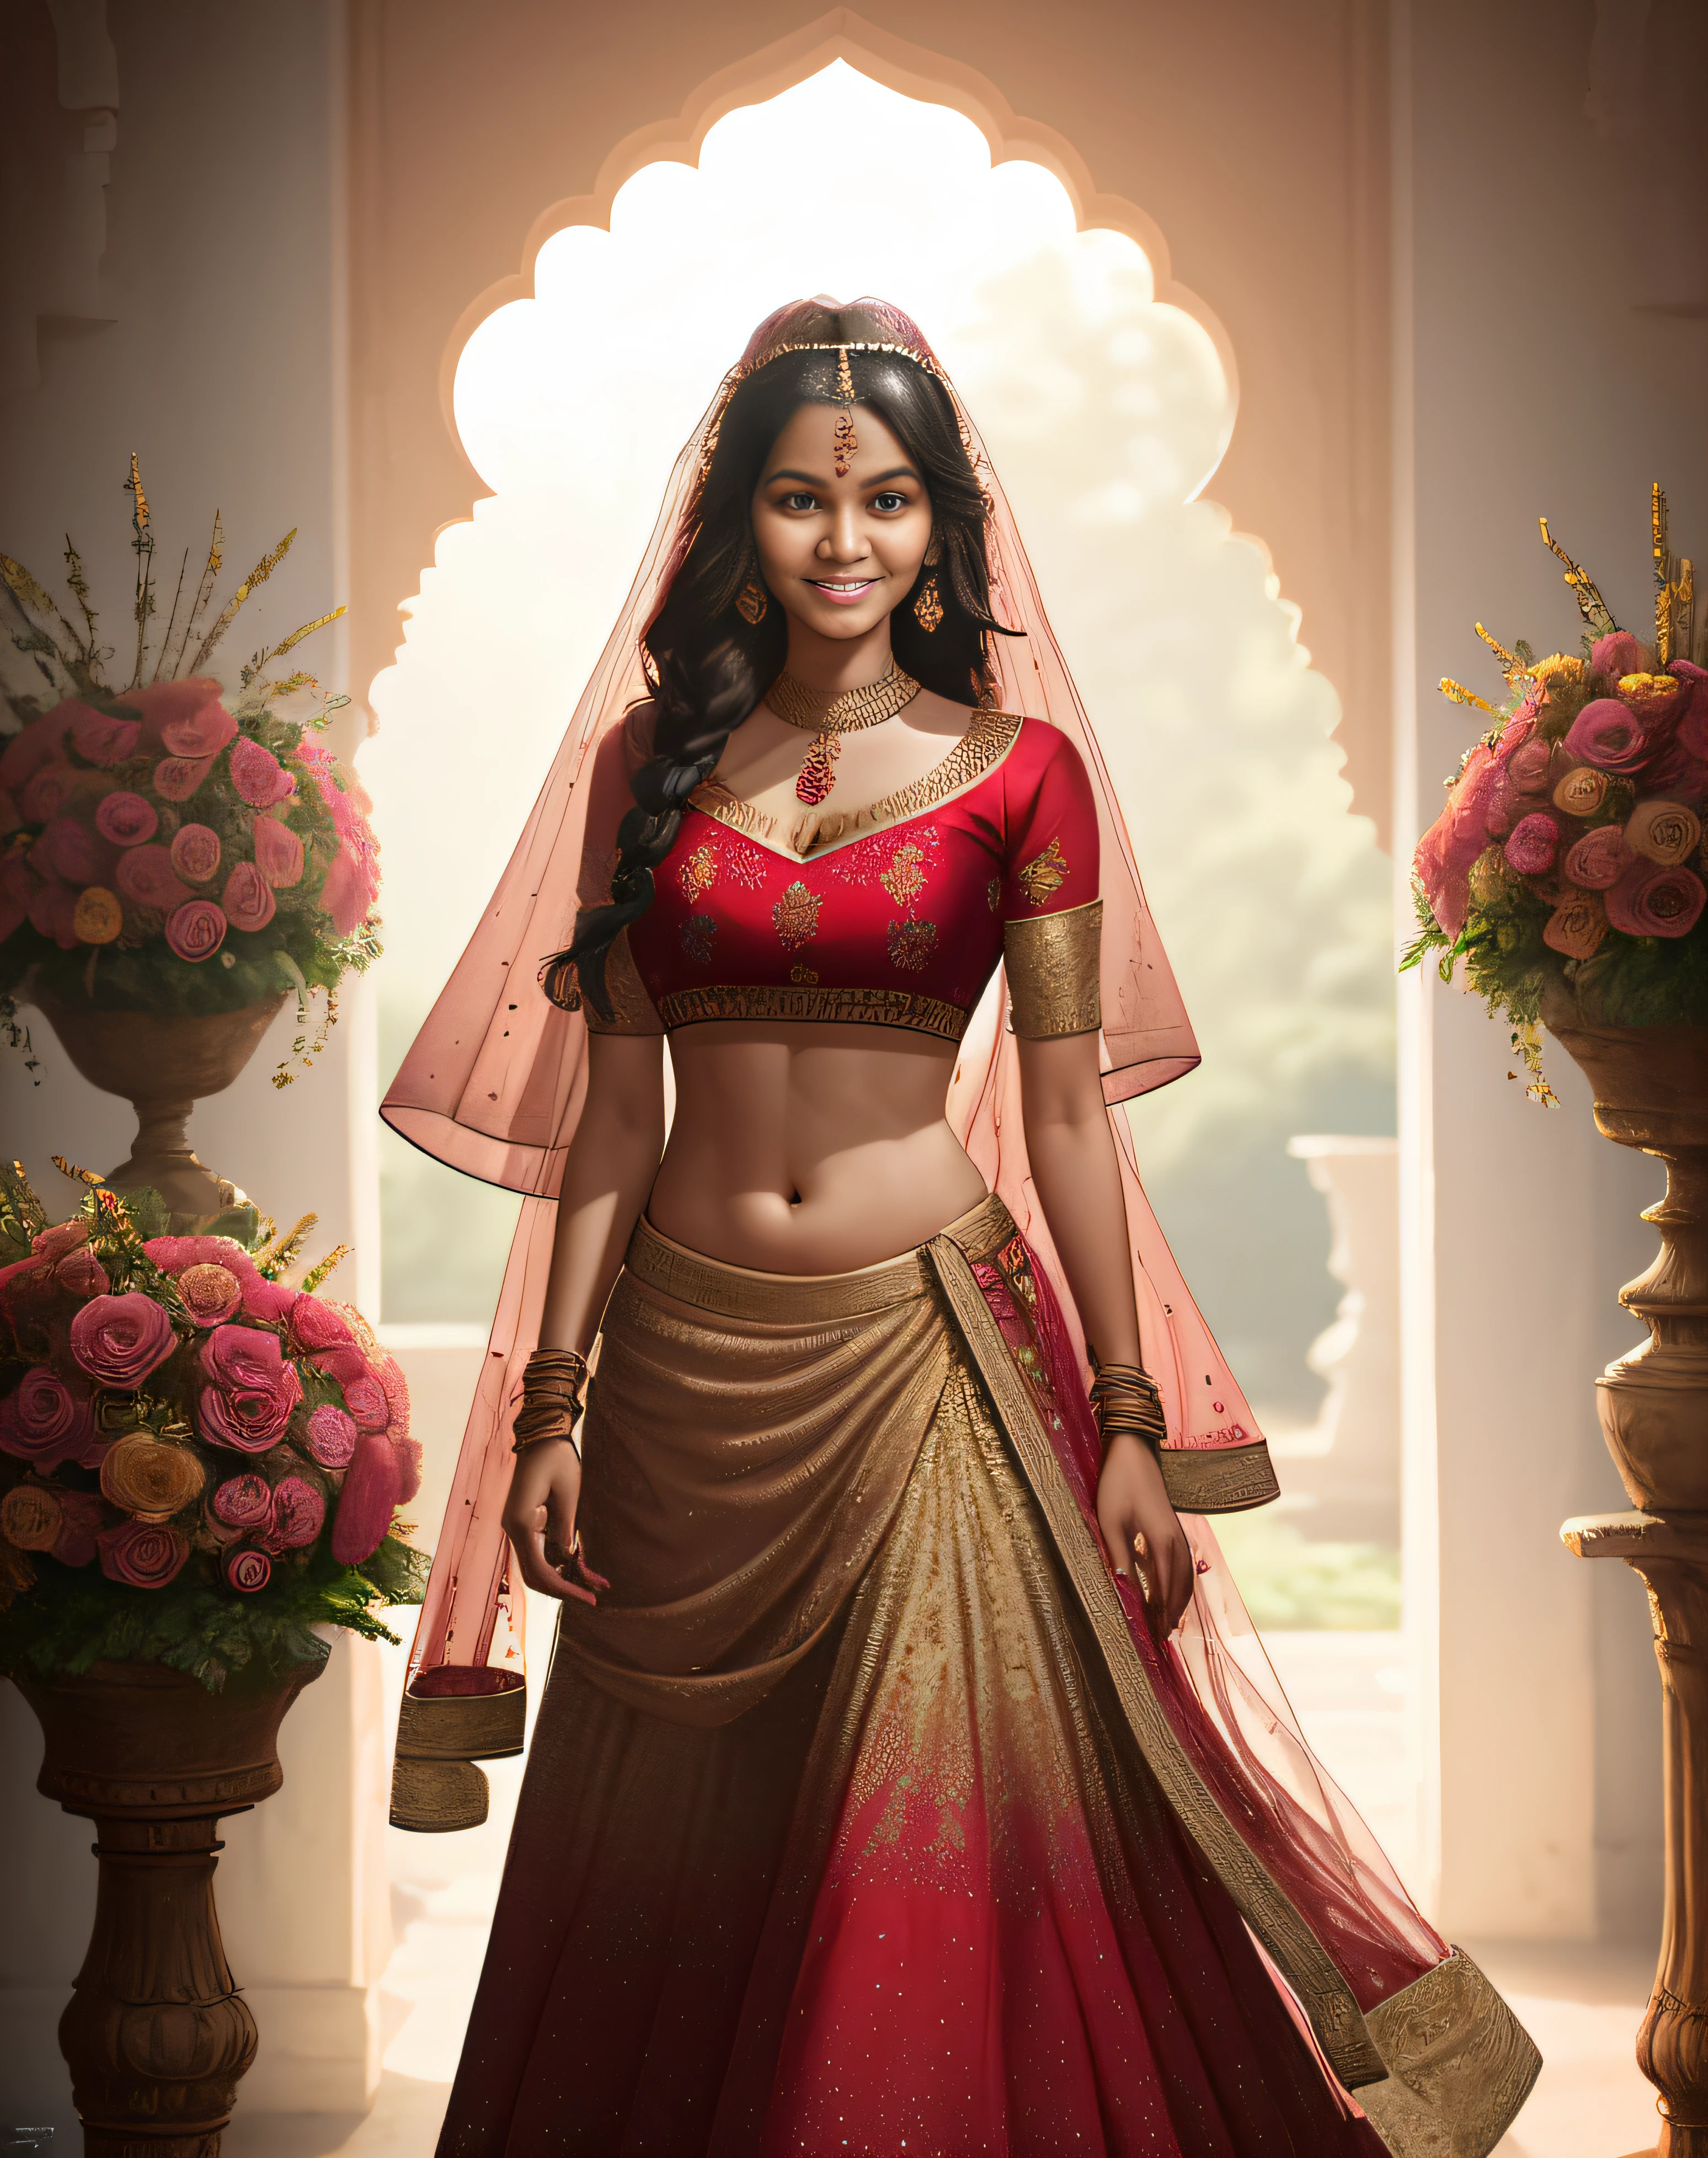 (obra maestra de fotografía de larga duración de un solo:1.2) seductor sexy alto con curvas (18 años) La novia princesa supermodelo india caminando (jardín:1.3), (luciendo un impresionante rojo nupcial & lehenga de oro & blusa:1.3). pura dupatta, maximalismo, (decoraciones florales de boda:1.3), (escote elegante & barriga), (maquillaje indio & joyas:1.2) Cabello castaño largo trenzado con reflejos.,, vivaz, mirada lujuriosa, regocijado (hermosos ojos detallados:1.1) , (sonrisa brillante y coqueta:1.2), (intensa y espectacular luz de la tarde:1.4), retroiluminado, llave de luz, Luz de llanta, rayos de luz, muy detallado, tendencia en artstation, salpicaduras de pintura, color rico, Retrato abstracto, por Atey Ghailan